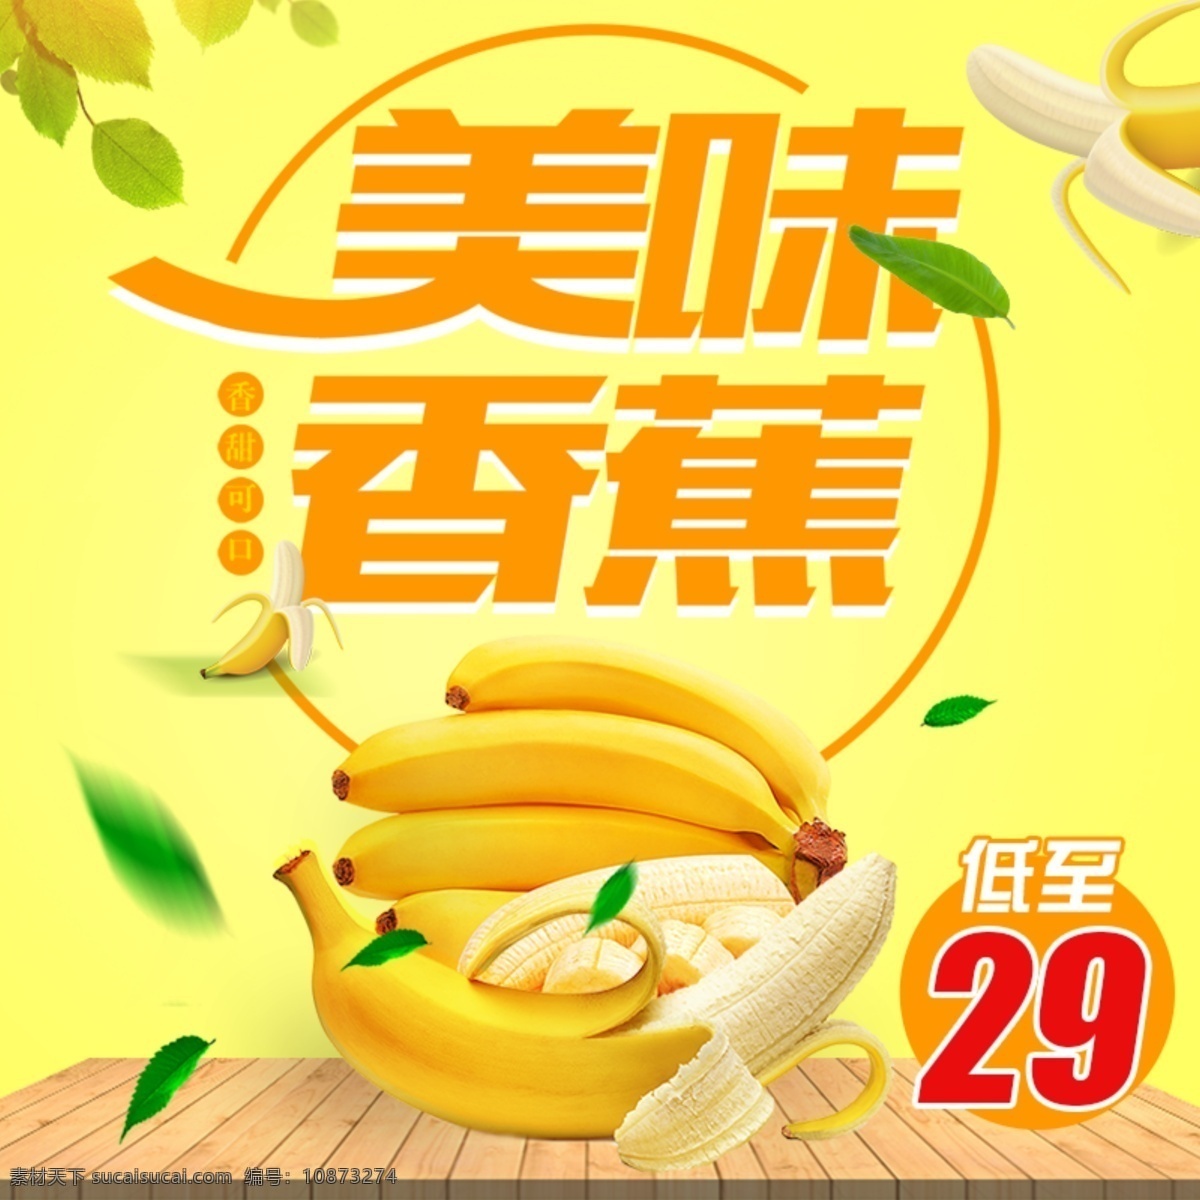 电商 淘宝 水果 香蕉 清新 主 图 模板 木板 绿叶 阳光 食品 香蕉主图 水果主图 水果直通车 食品主图